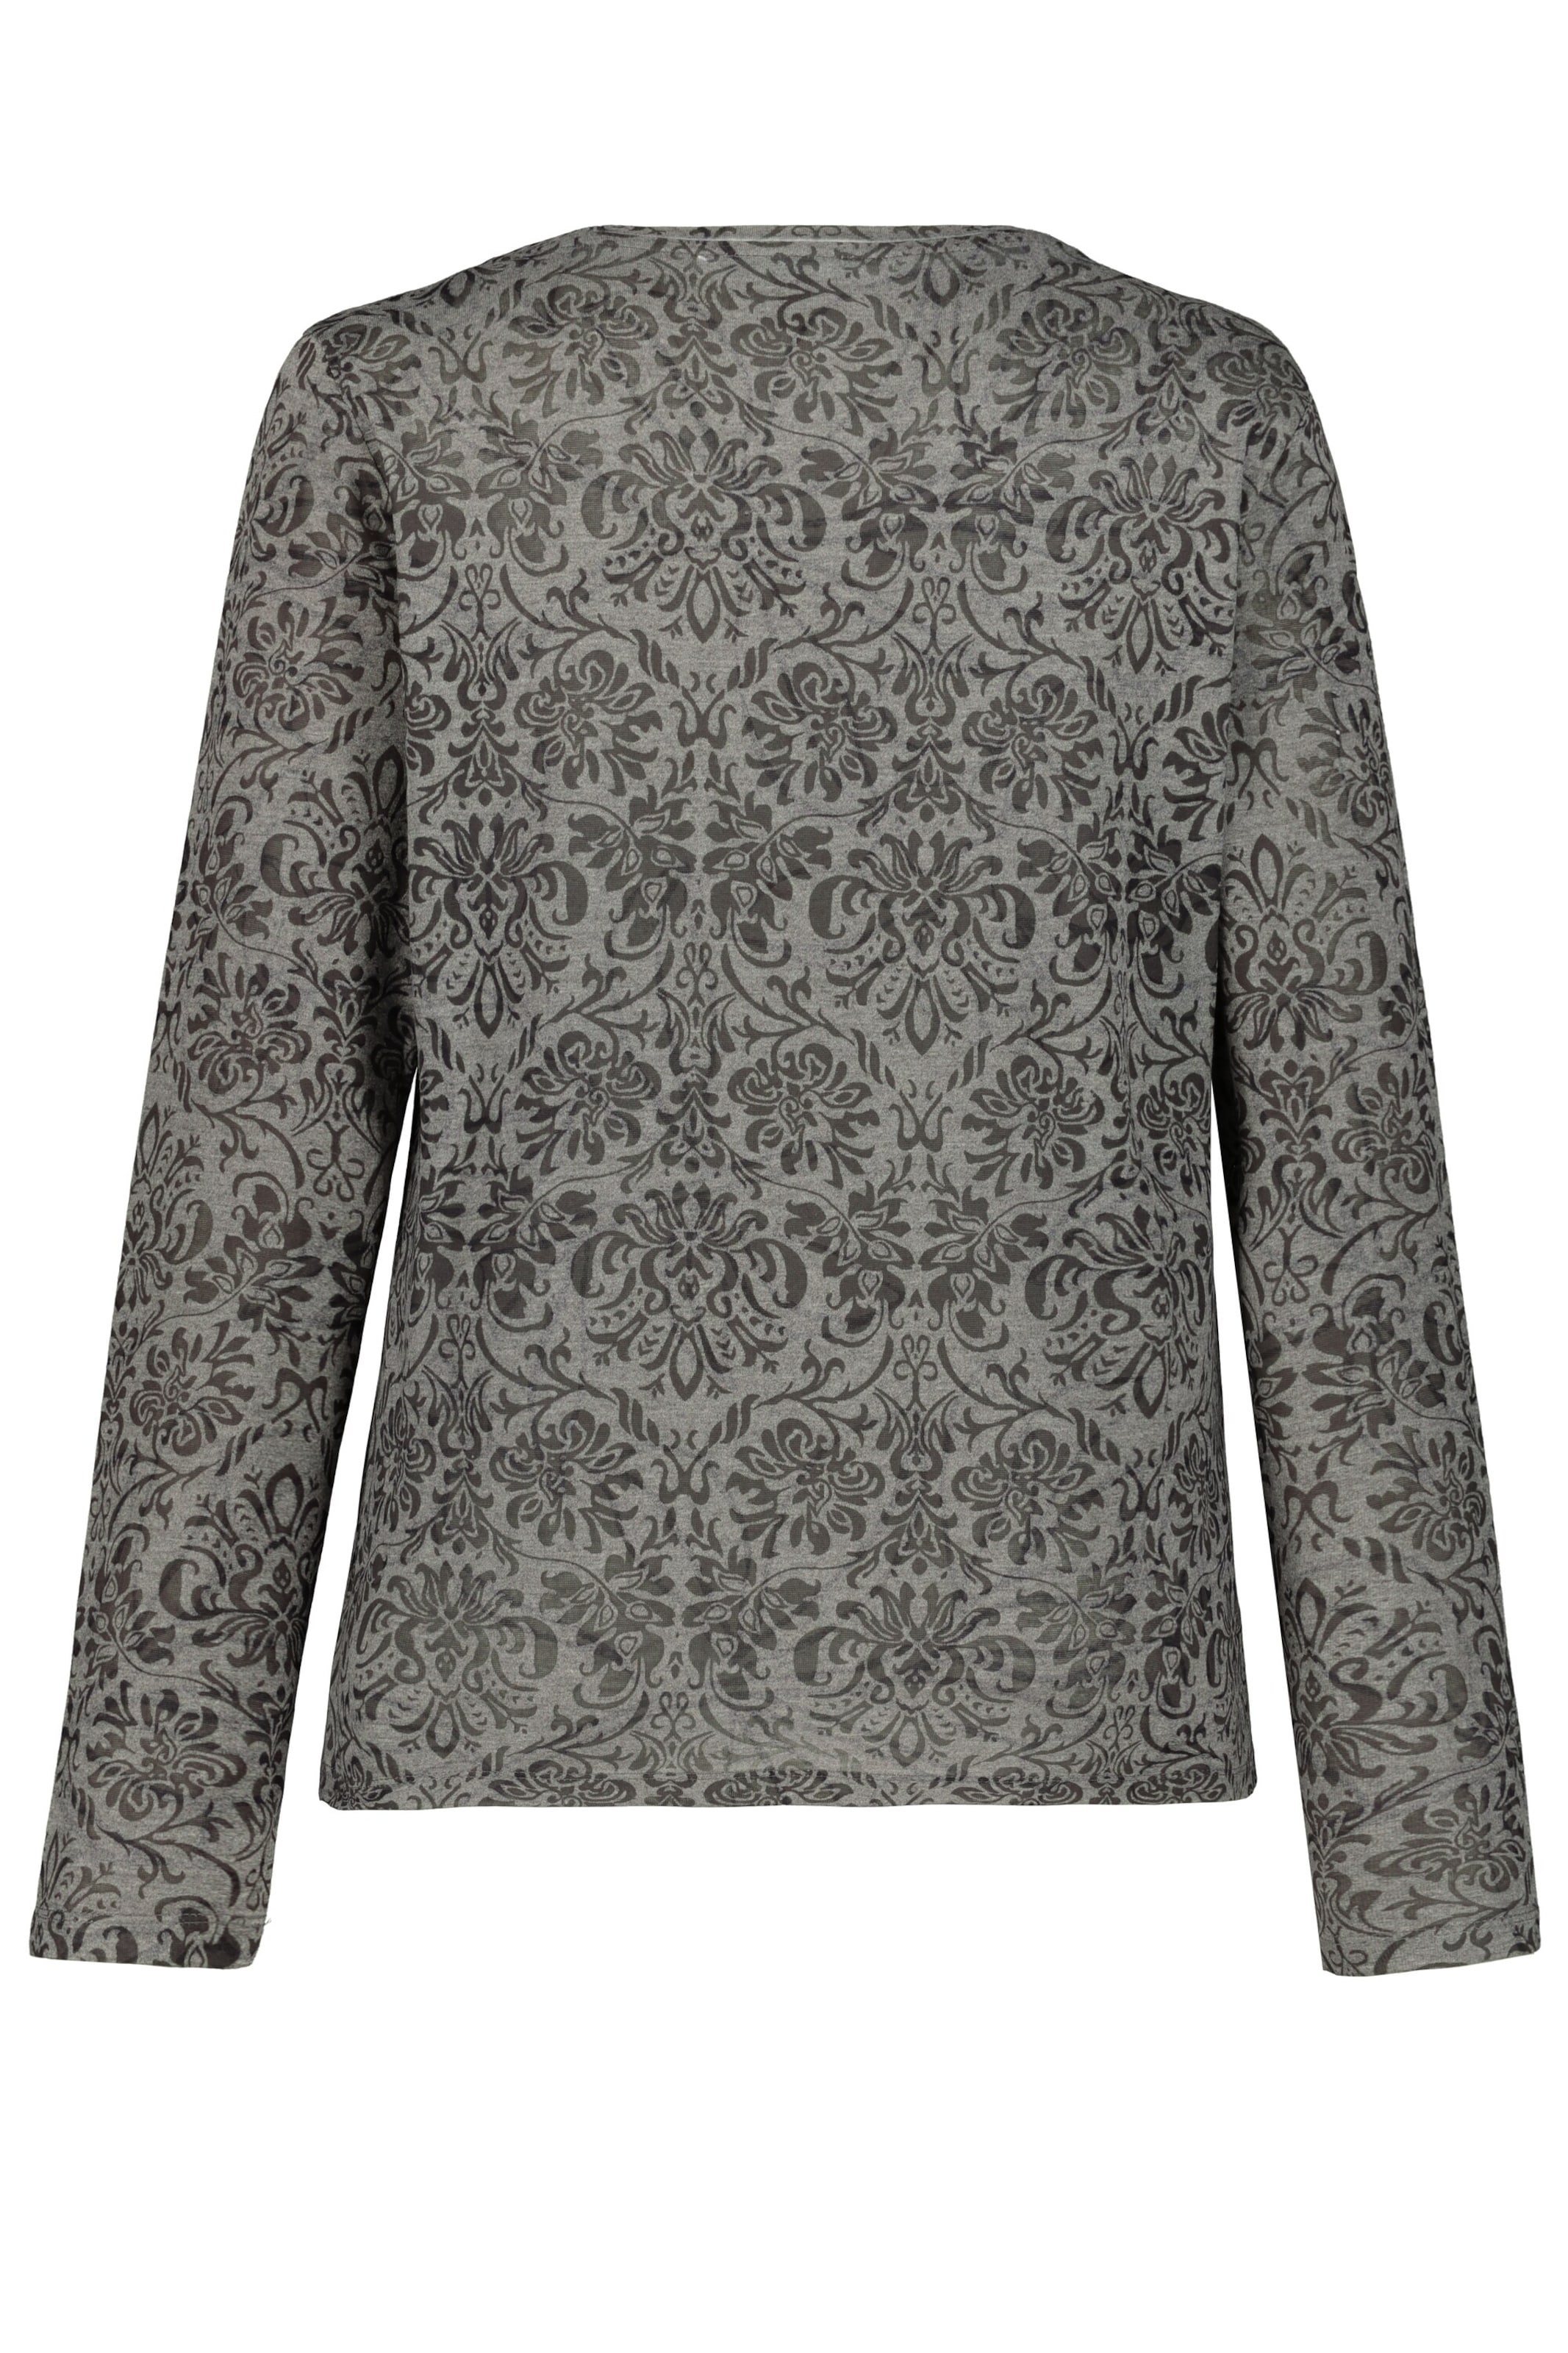 Gina Laura Gina Laura Damen Shirt, Ausbrennerjersey, verziertes Blütenmotiv 751508 in Grau 